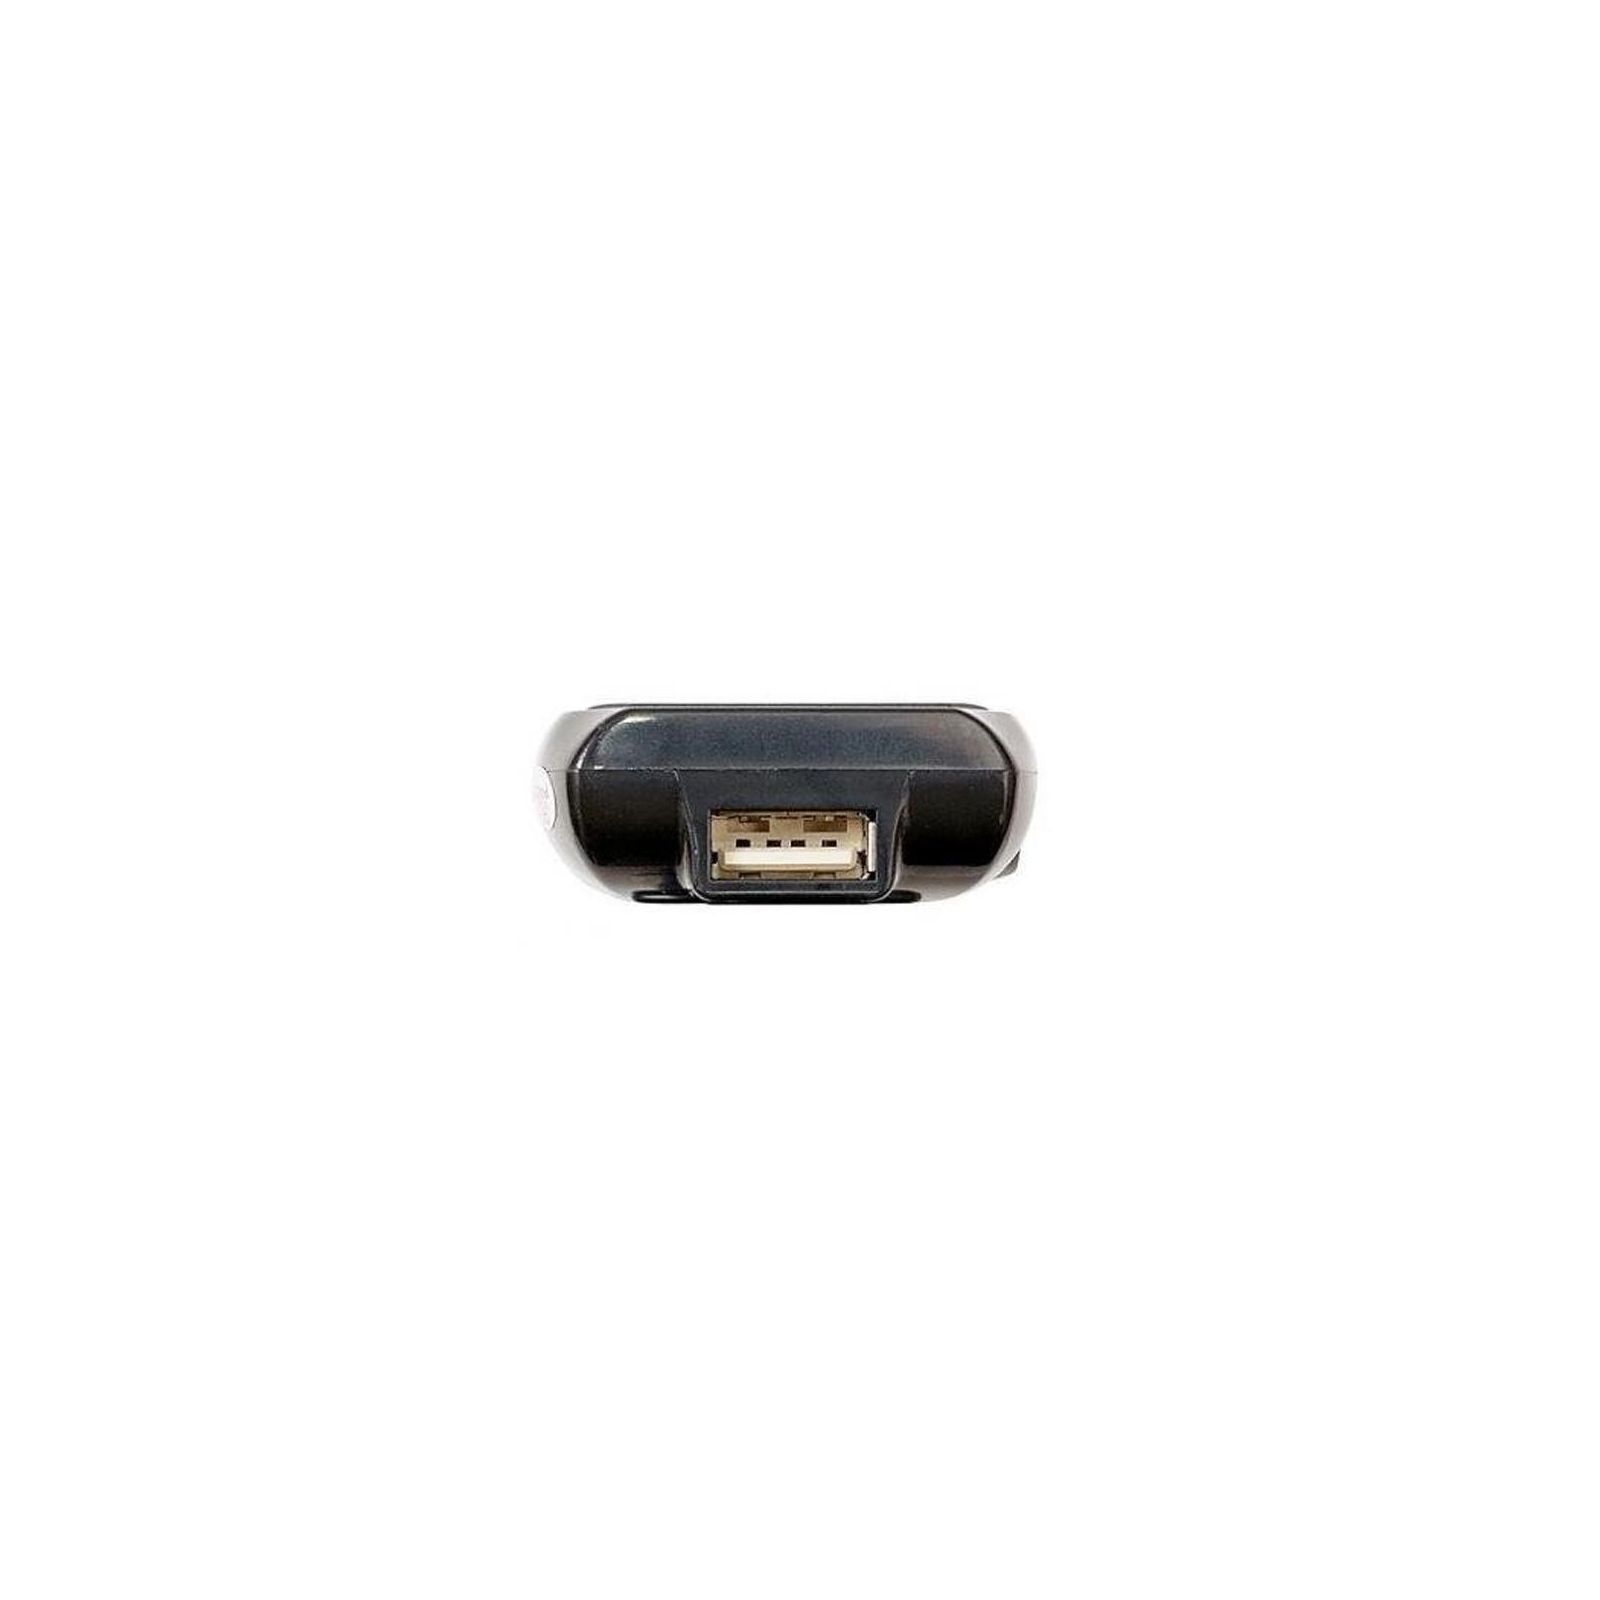 FM модулятор Grand-X CUFM71GRX black SD/USB (CUFM71GRX) зображення 3